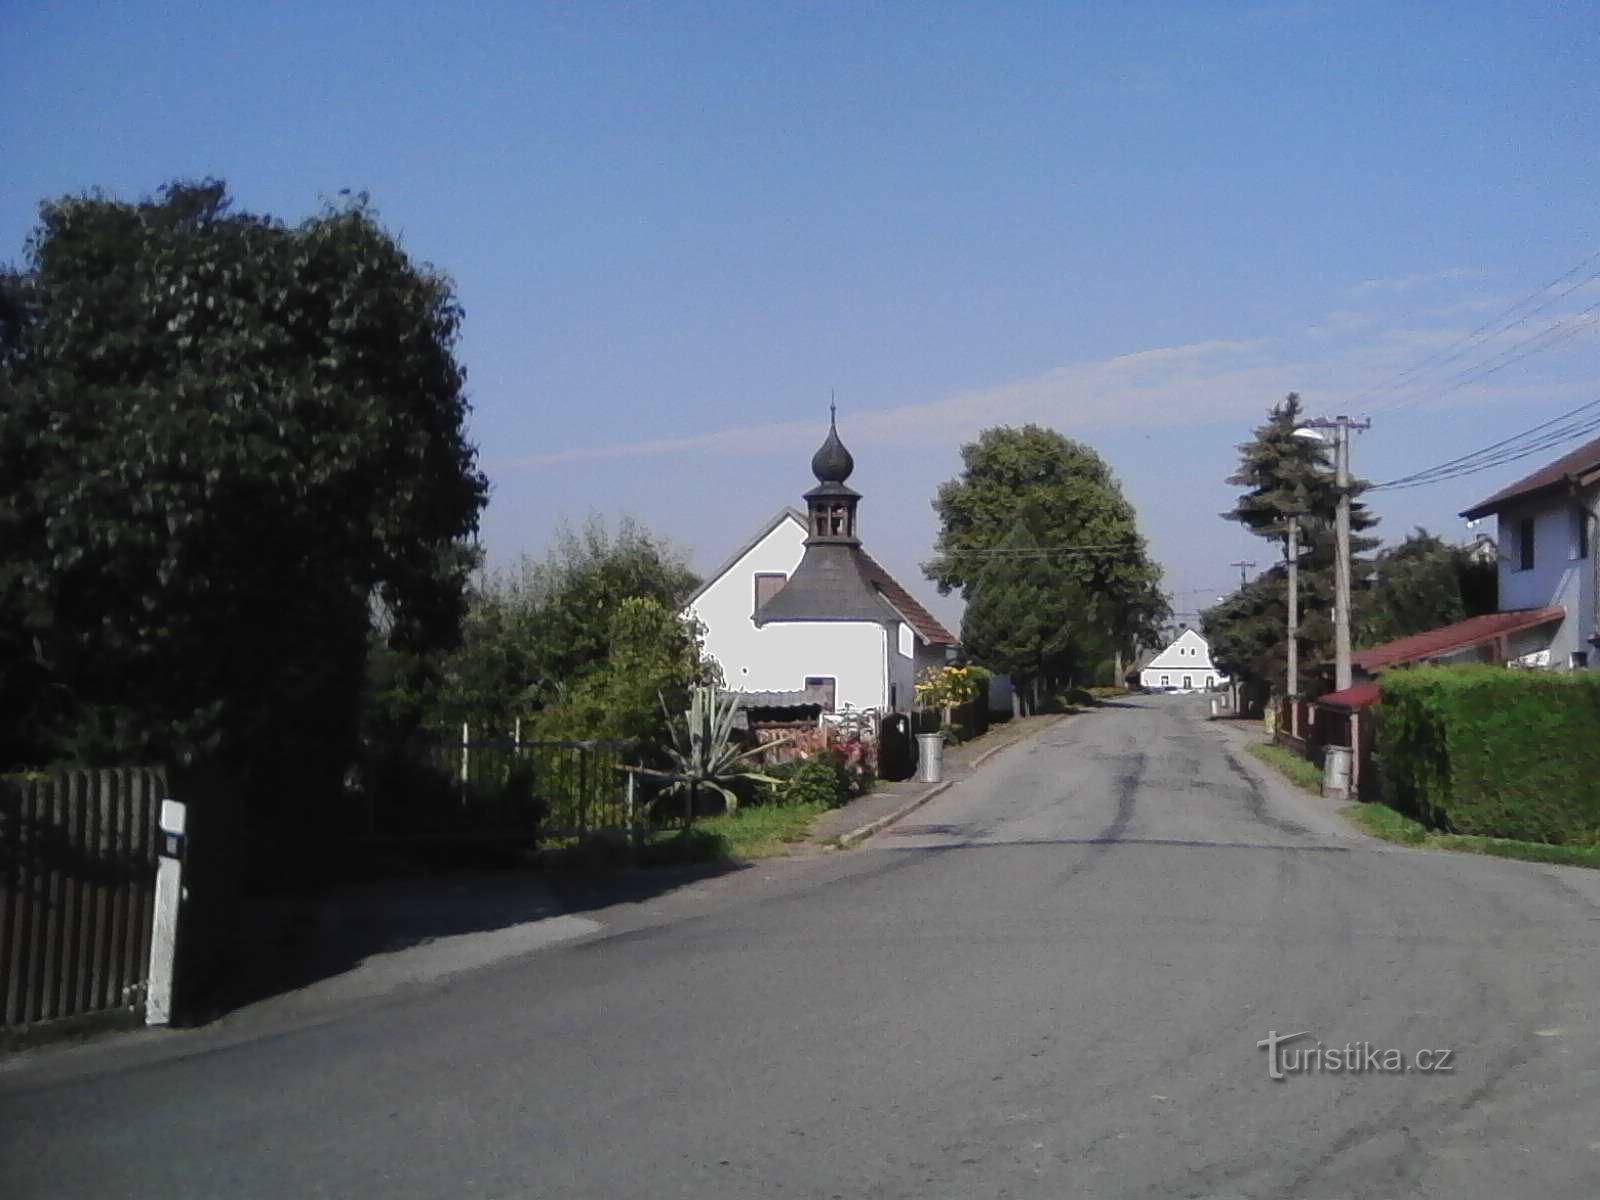 2. Capilla en el pueblo de Horní Hořice.